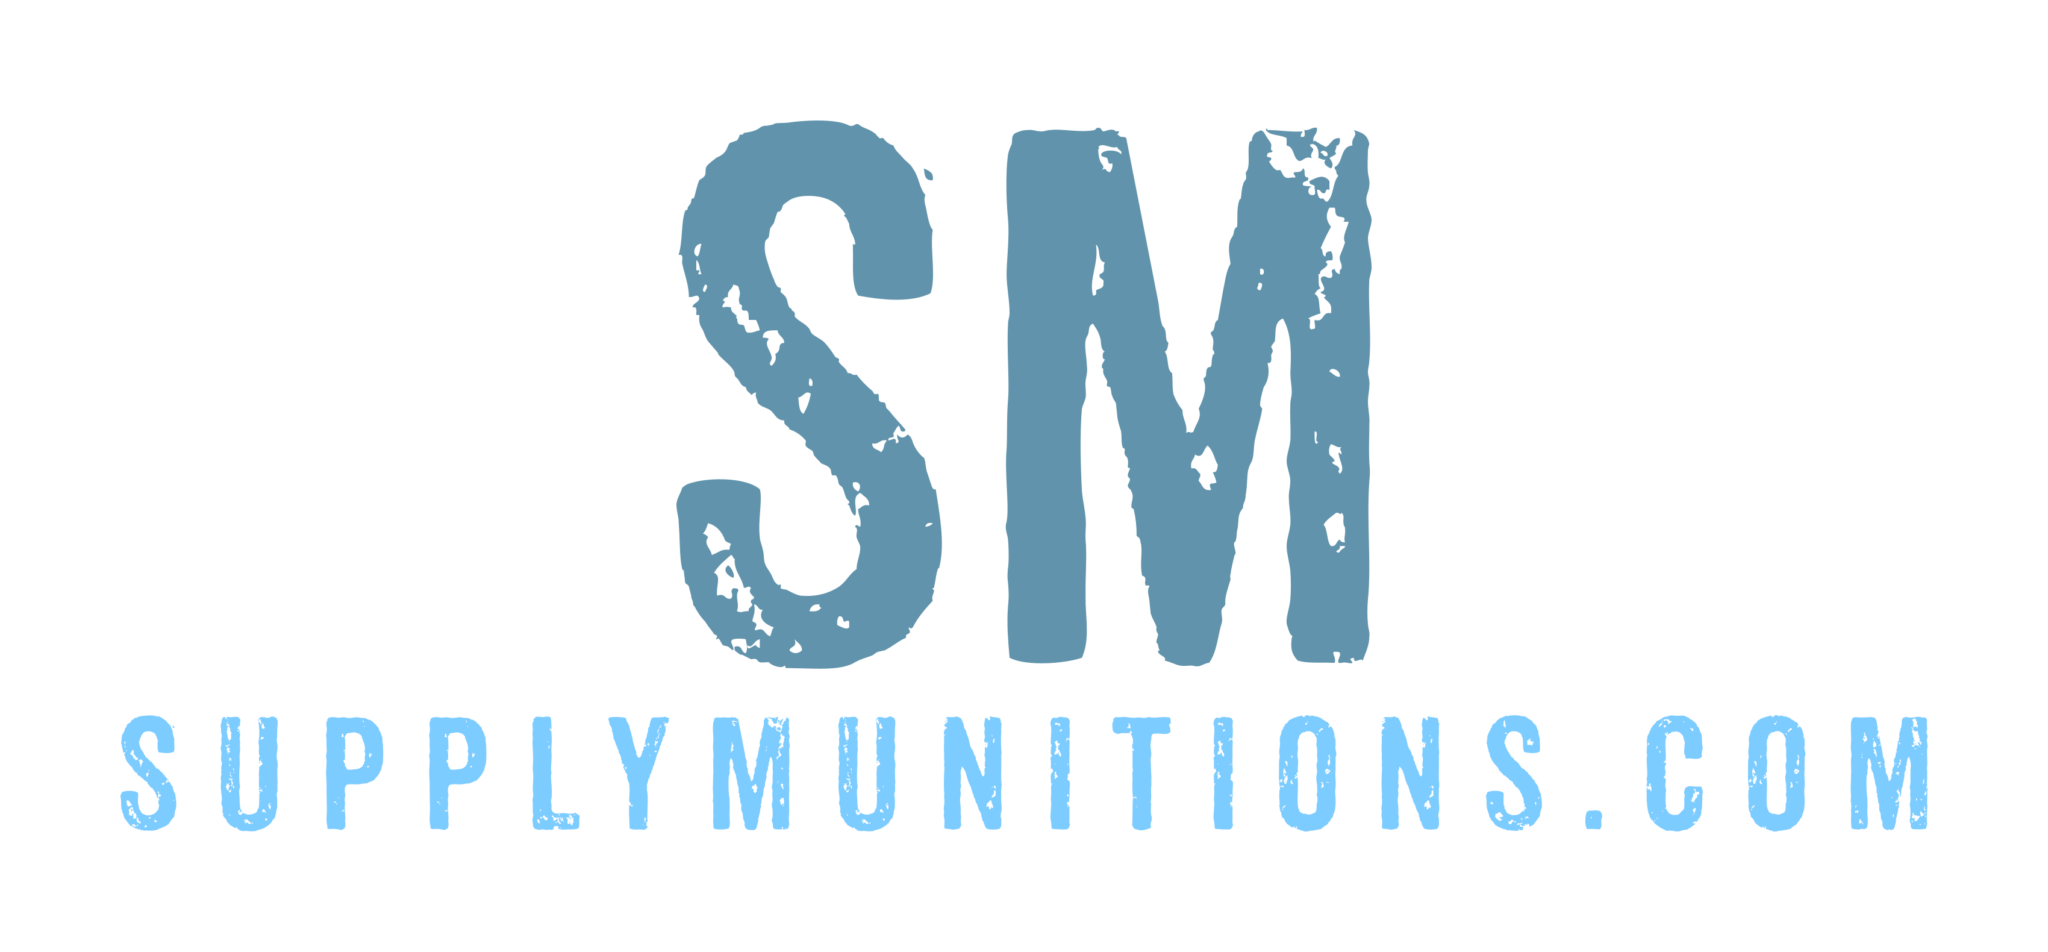 SupplyMunitions Logo